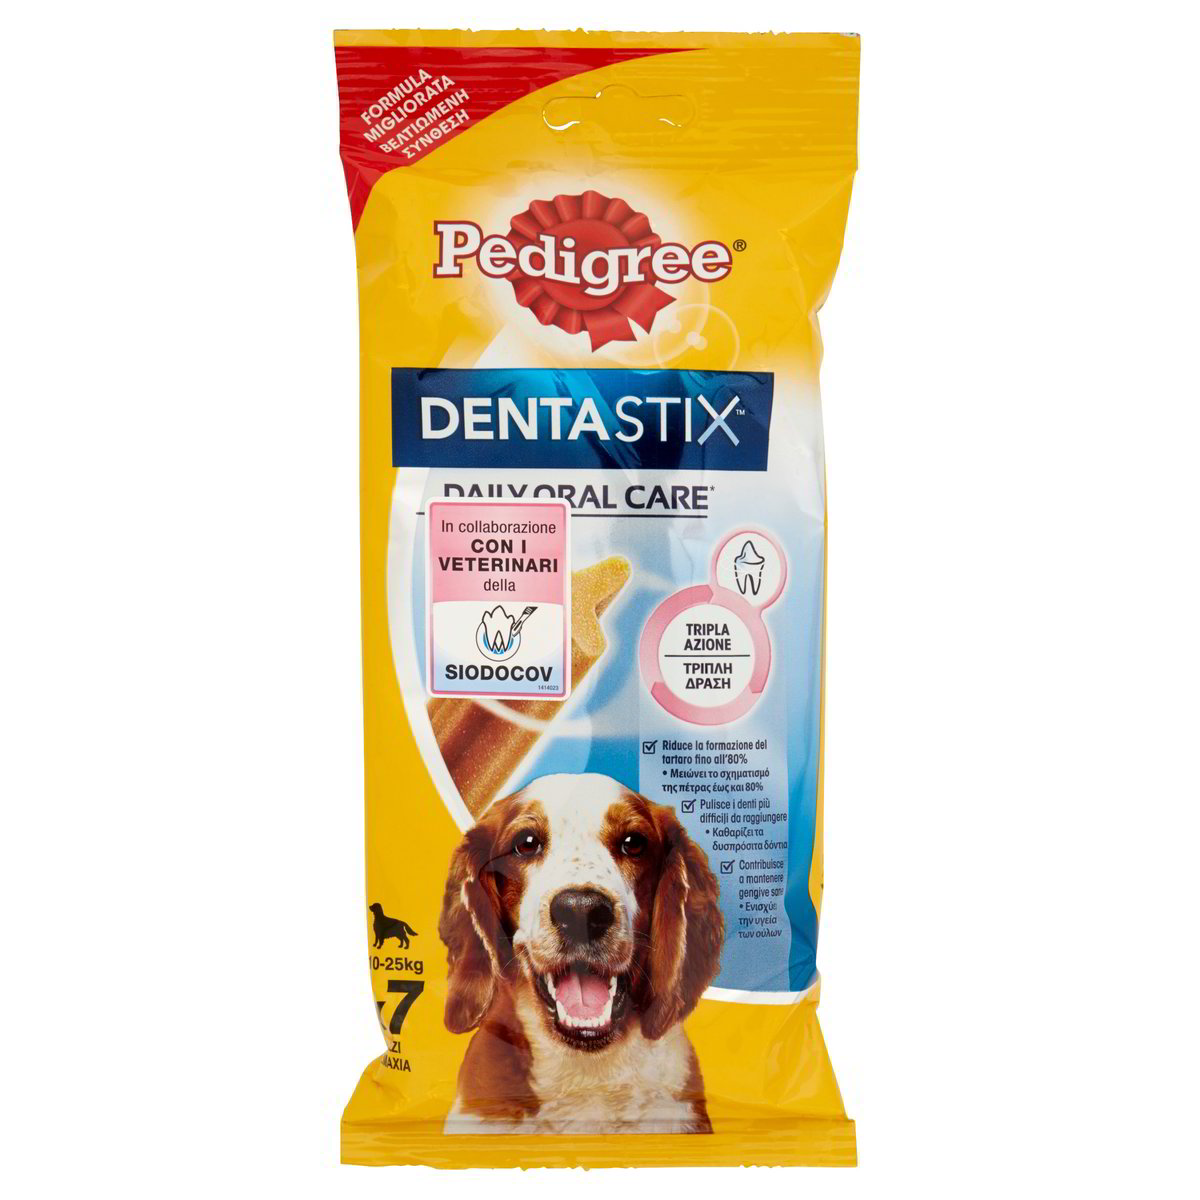 Dentastix 10-25 Kg